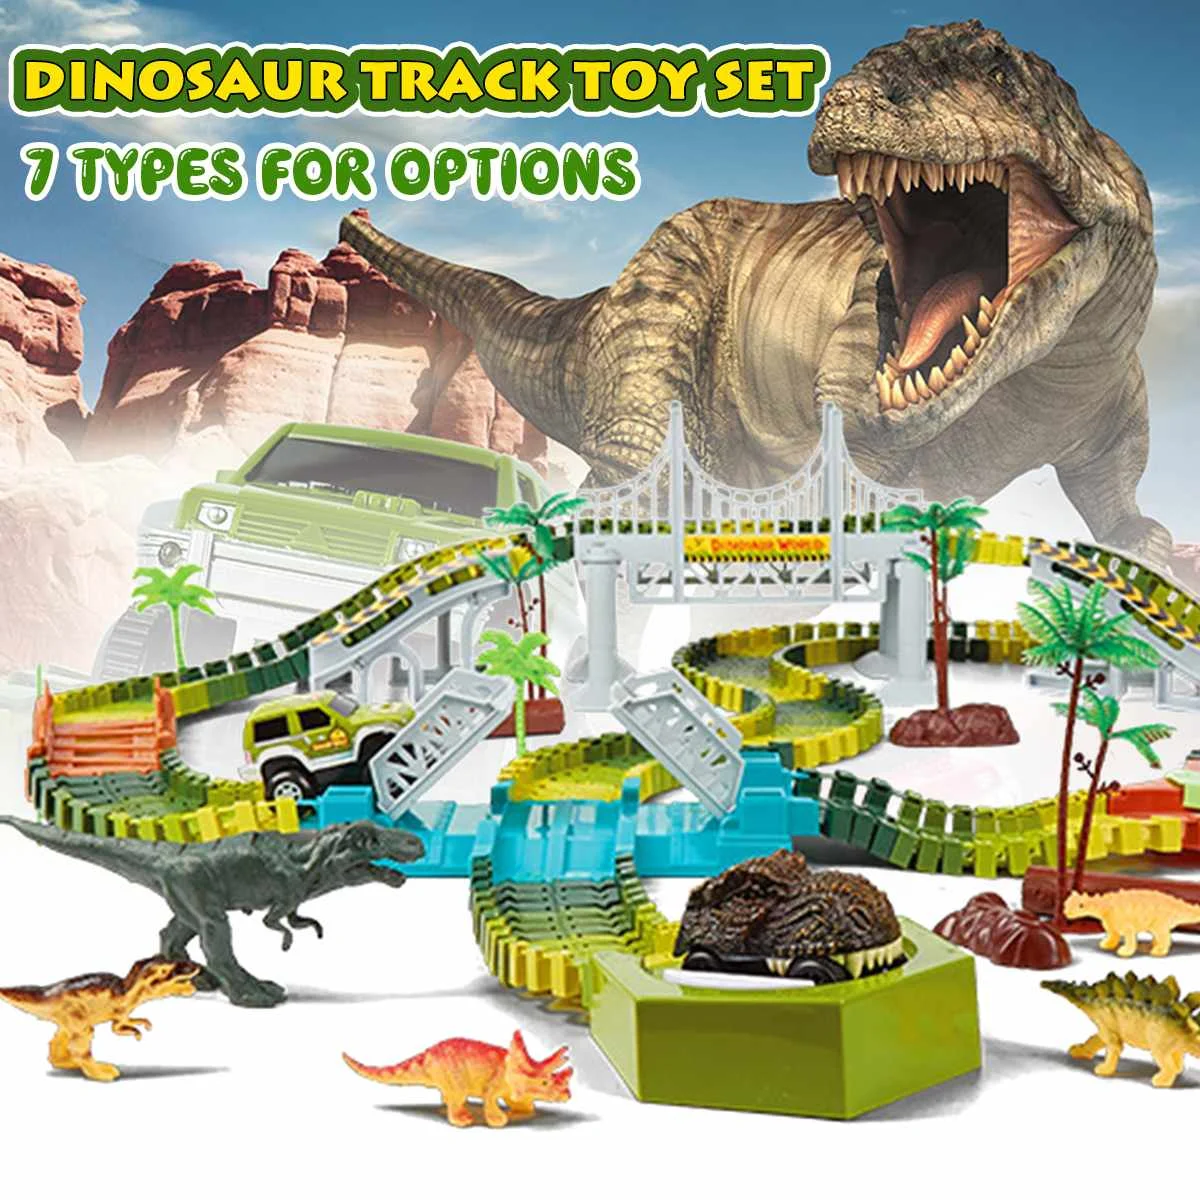 

240 шт., игрушка с динозавром и железной дорогой, гоночный трек, набор игрушек, развивающий гибкий трек, флеш-светильник, игрушки для детей в по...